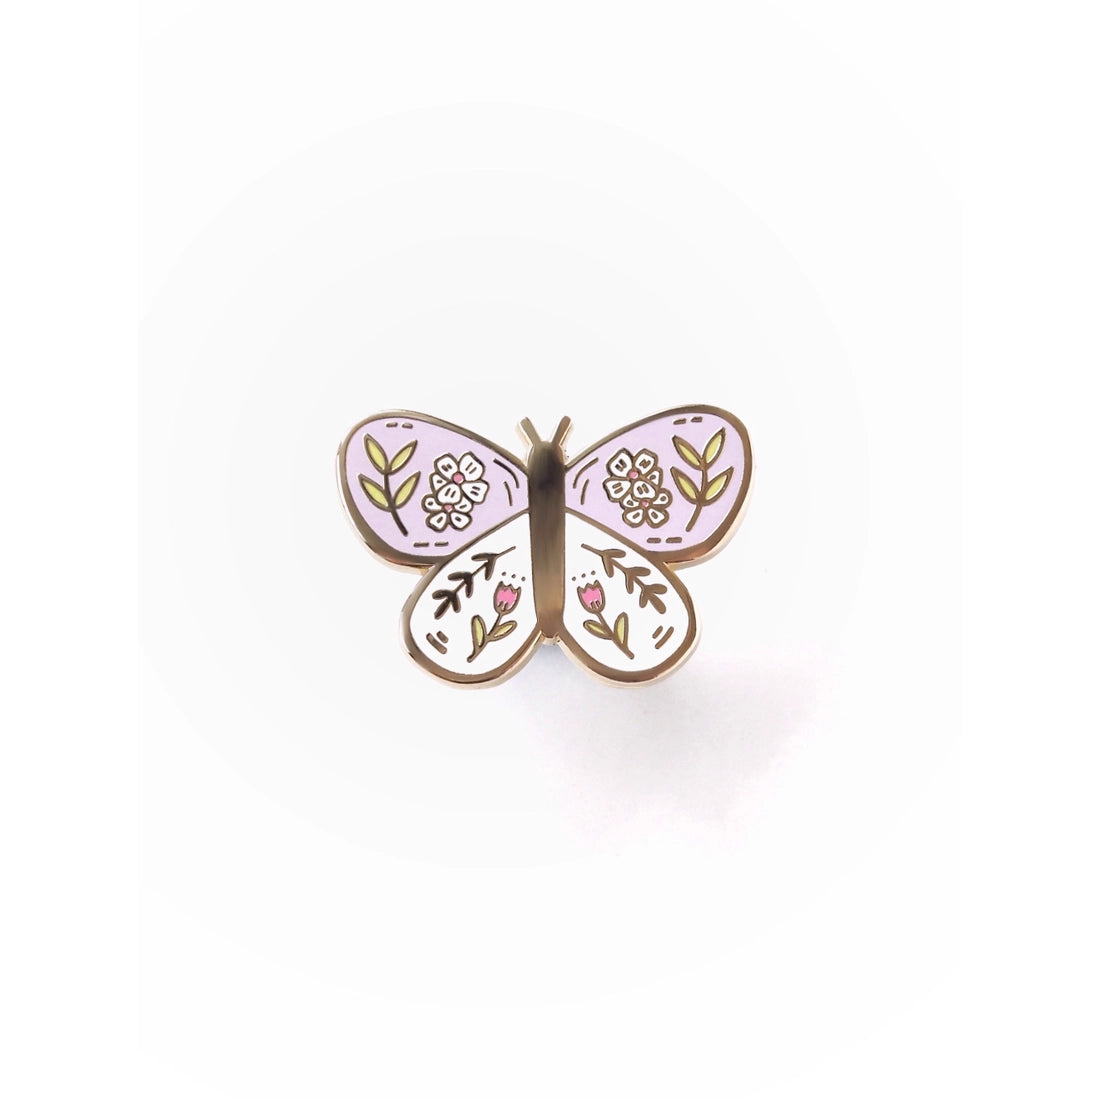 Enamel Pin - Butterfly